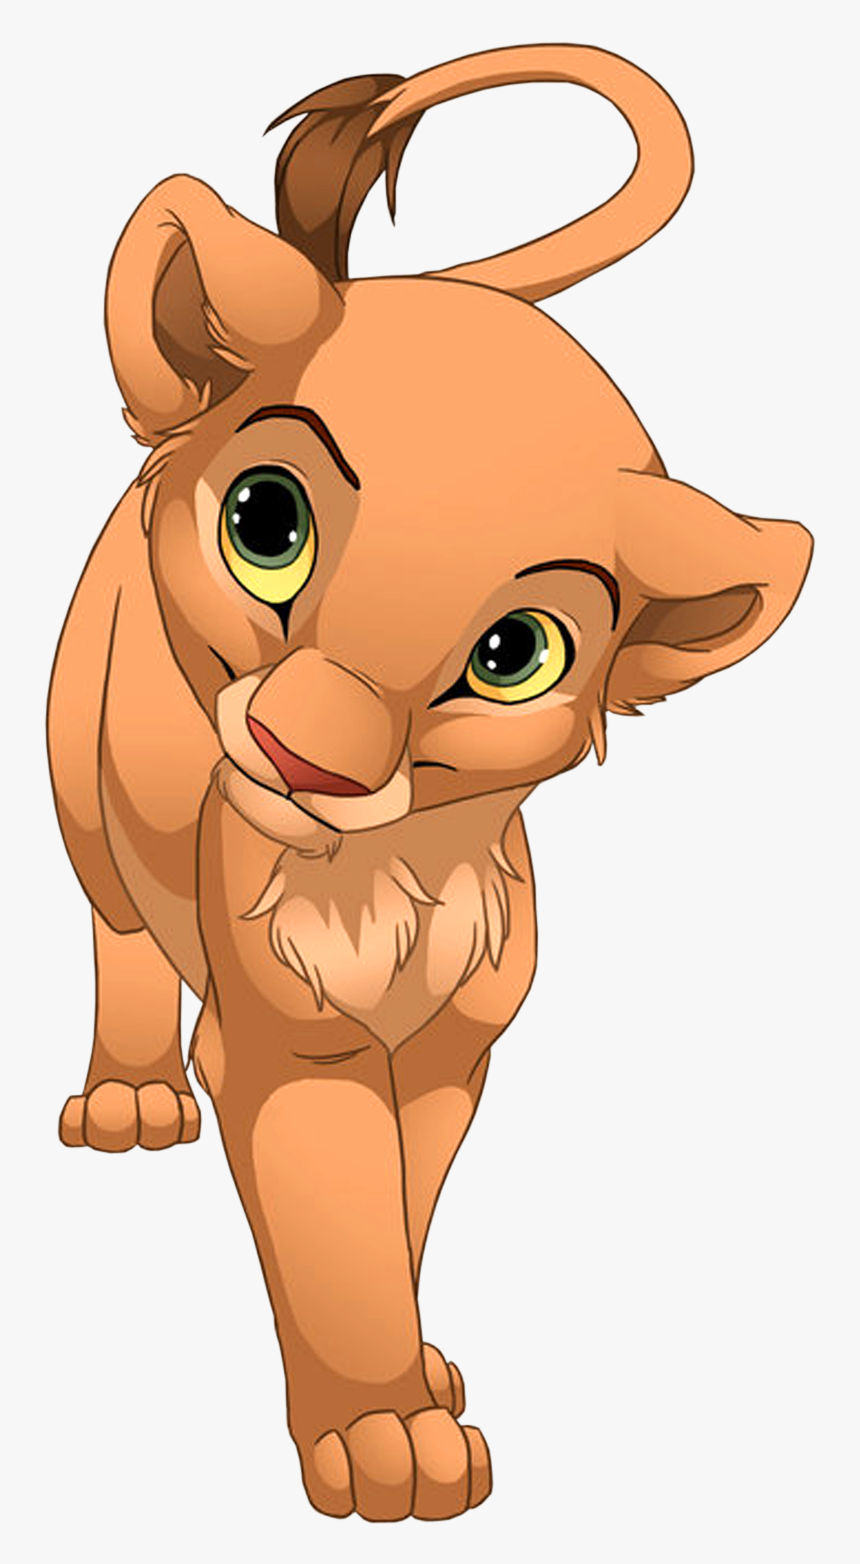 Nala Lion King Cartoon, HD Png Download, Free Download